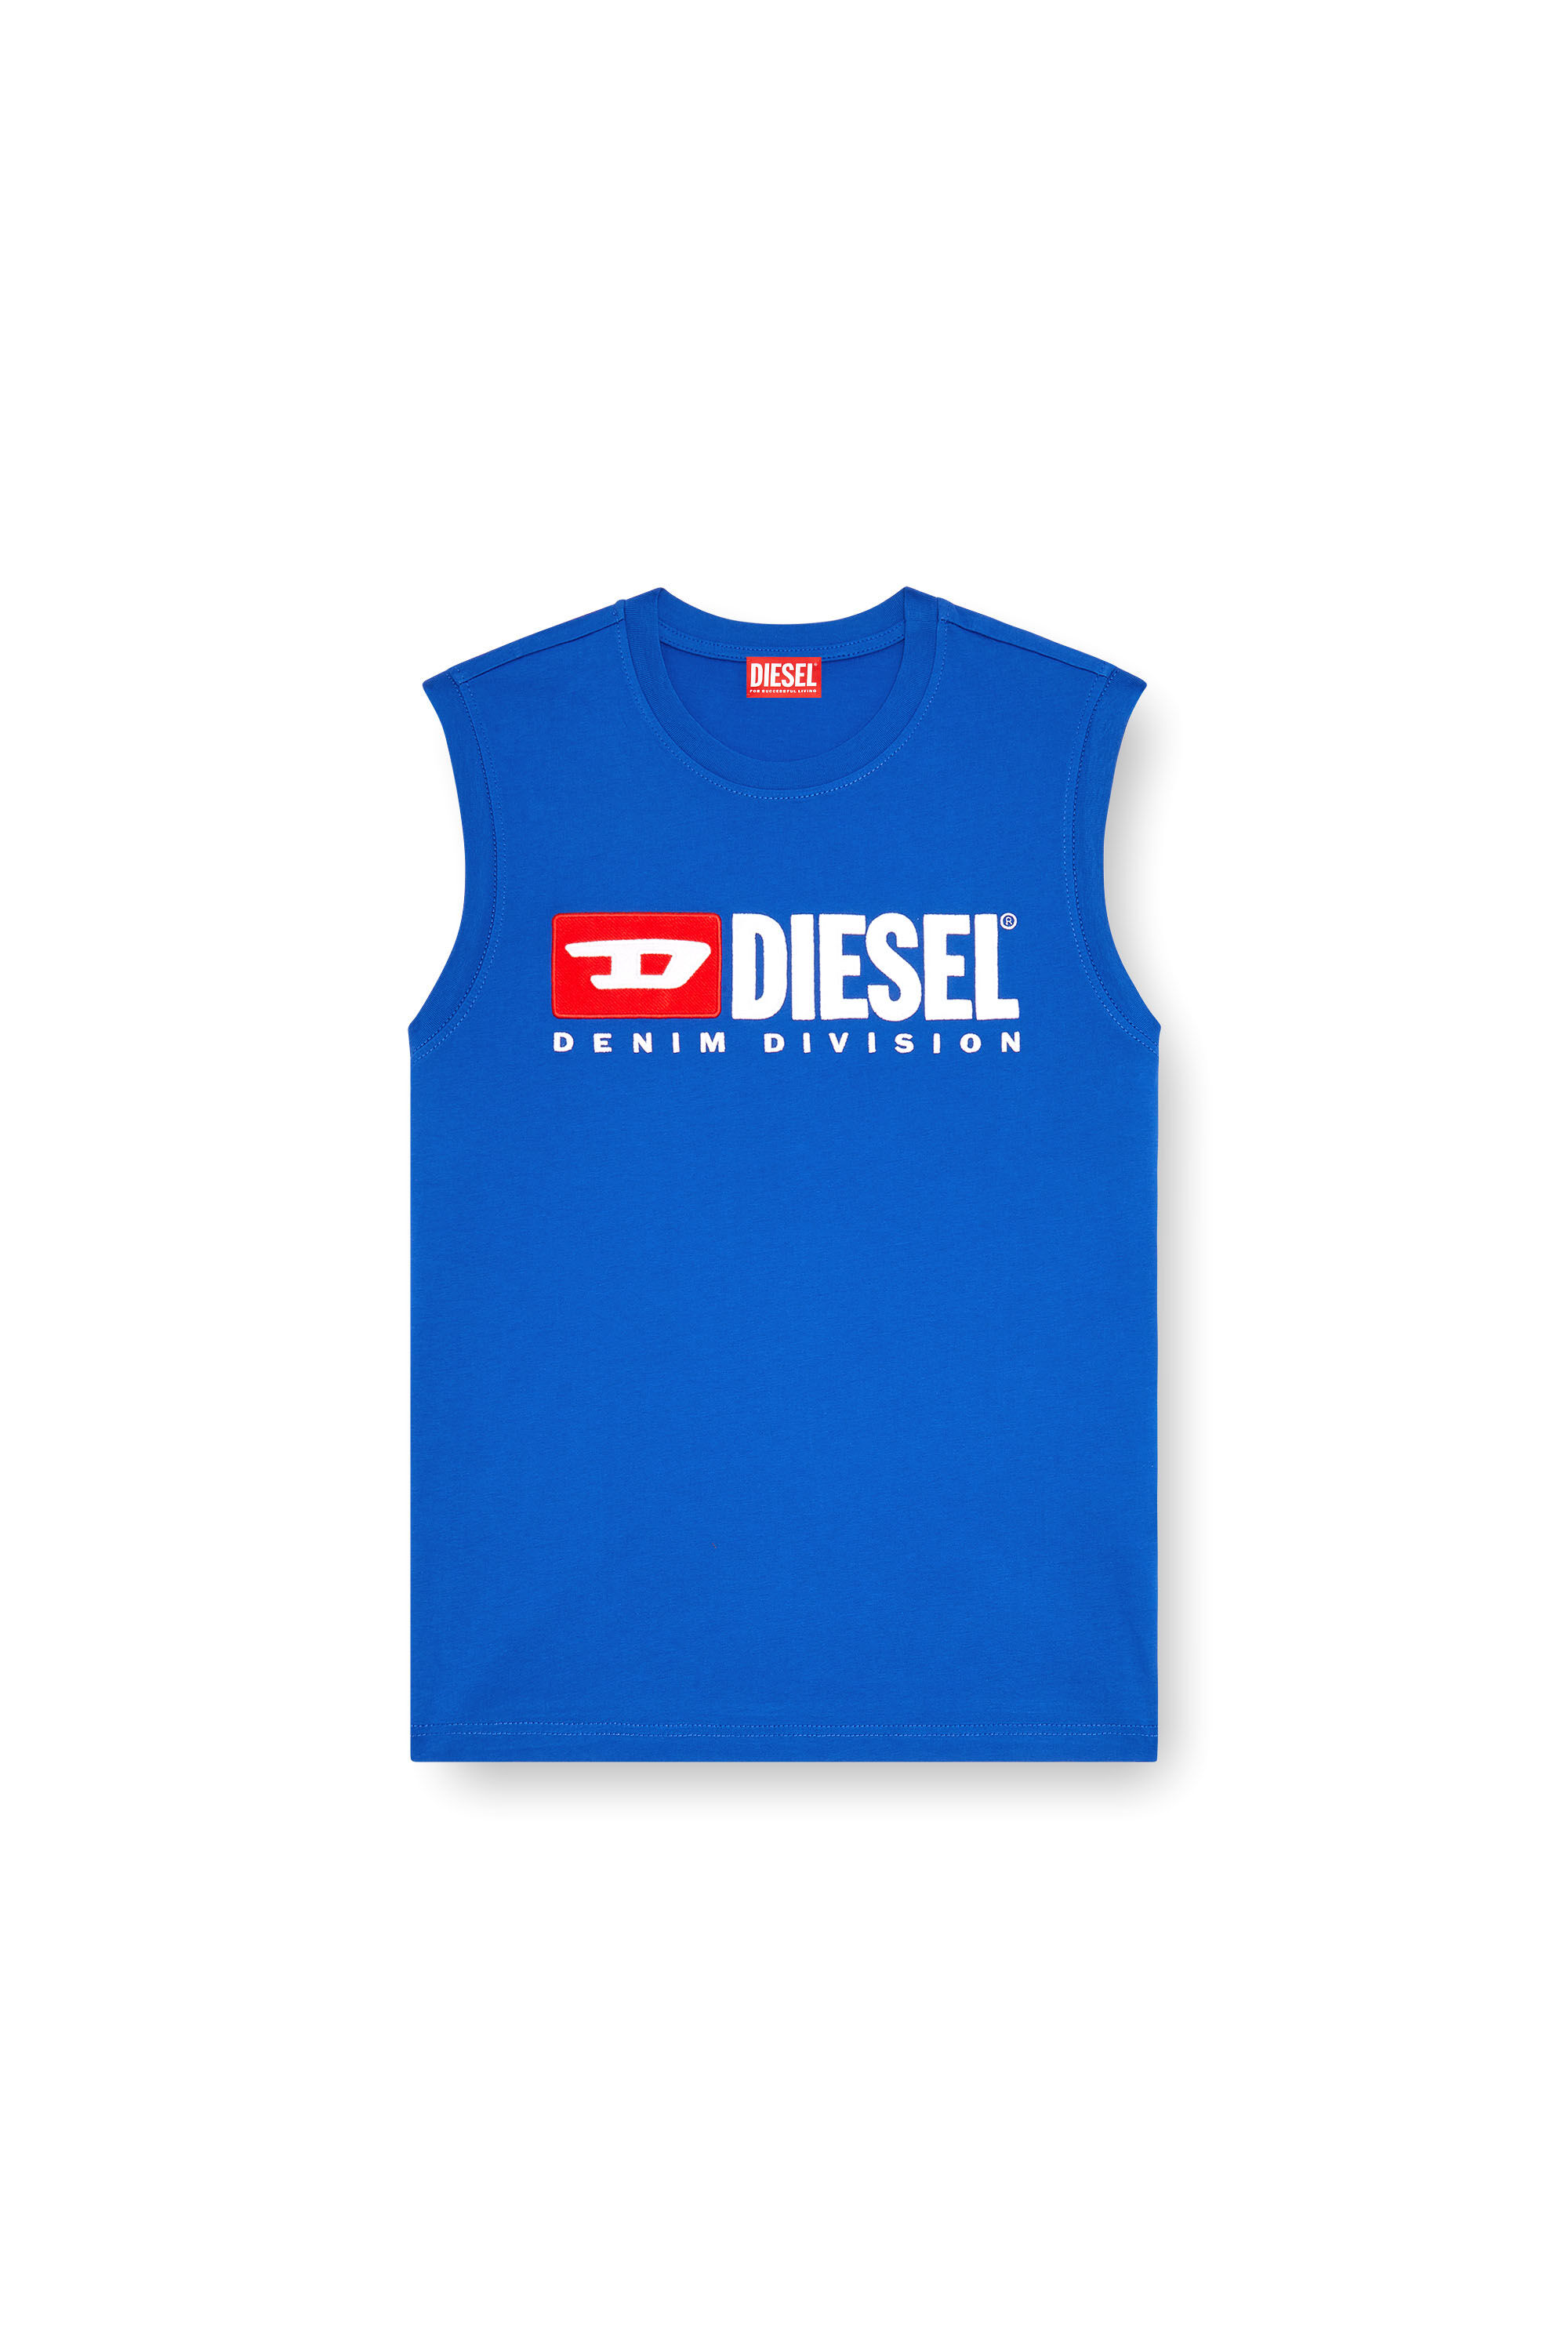 Diesel - T-ISCO-DIV, Hombre Camiseta sin mangas con logotipo estampado en el pecho in Azul marino - Image 2